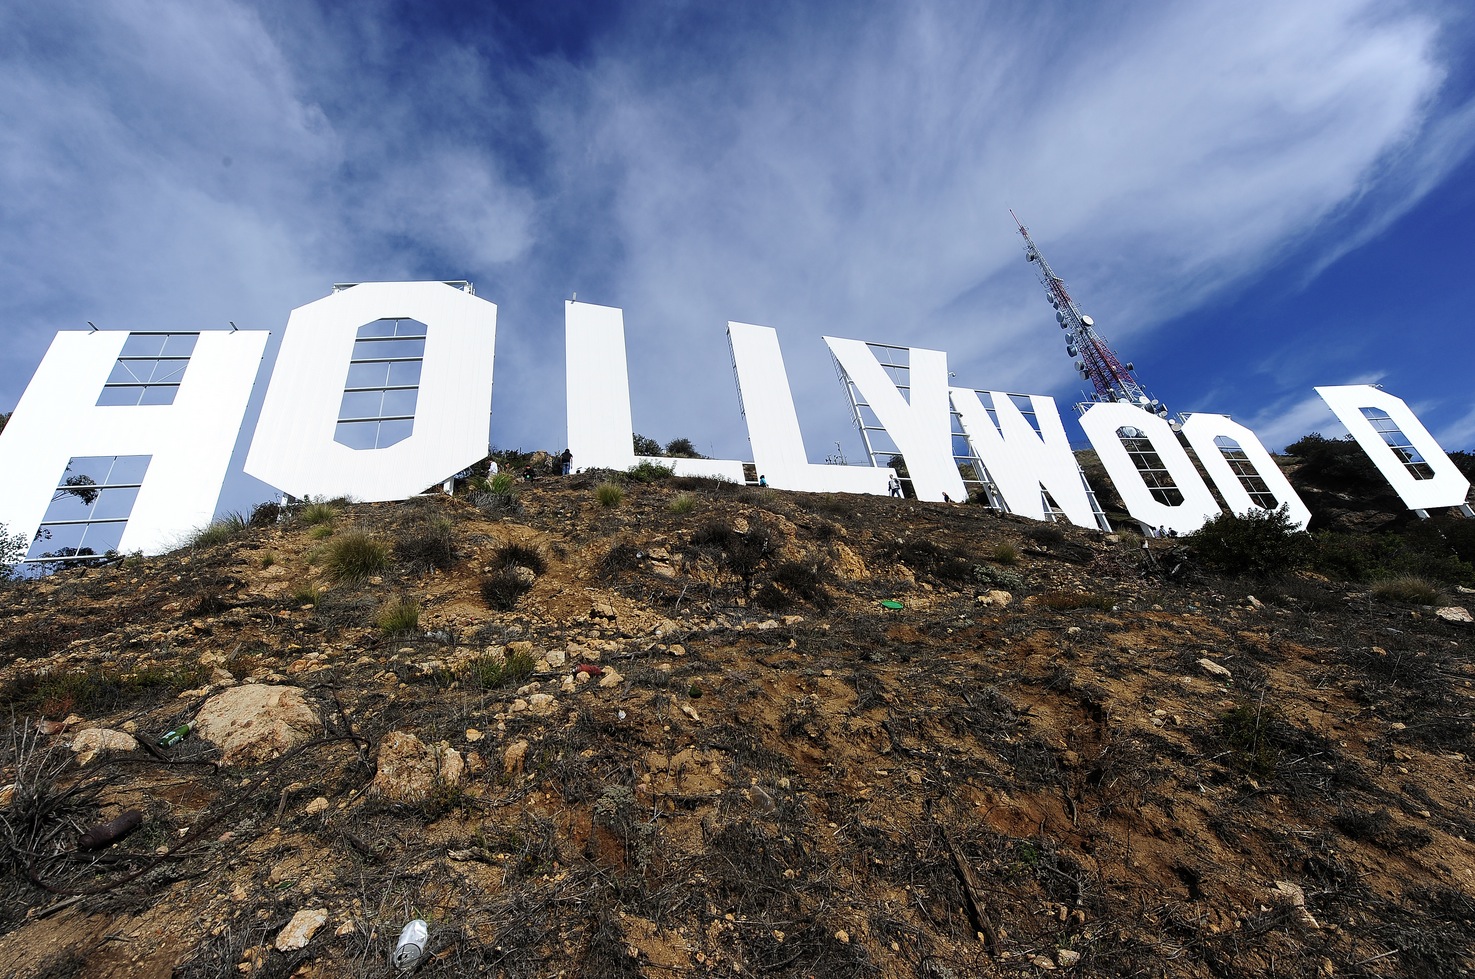 Letreiro de Hollywood é inaugurado – efemérides do éfemello